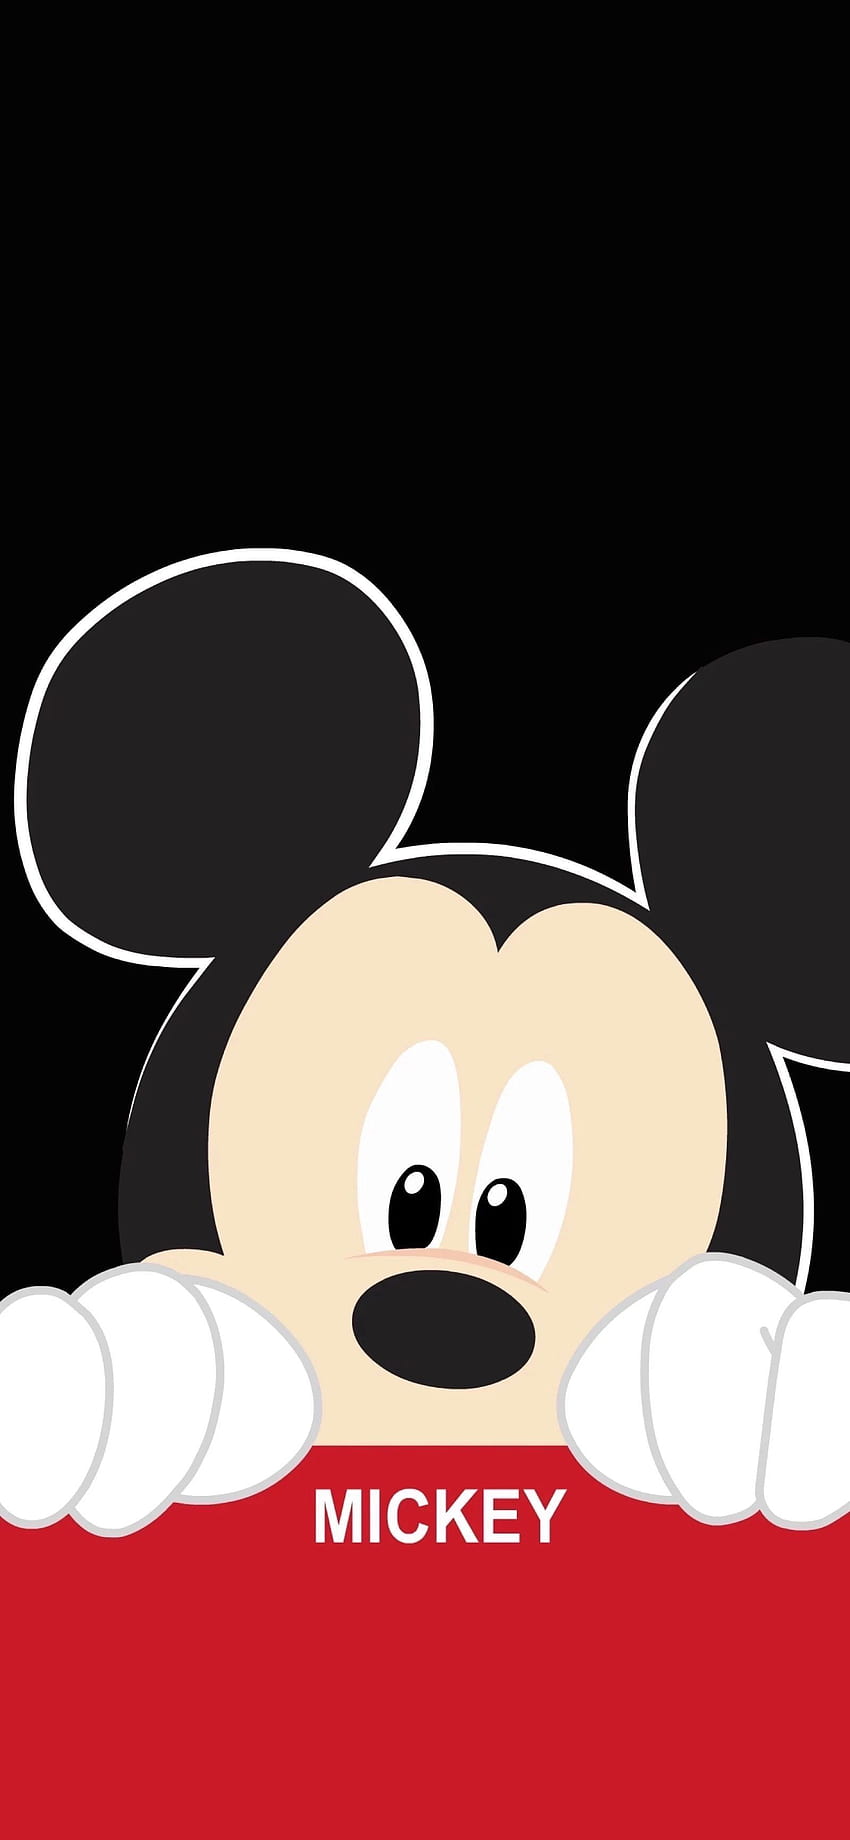 Minnie Mouse iPhone, Logo Mickey dan Minnie wallpaper ponsel HD